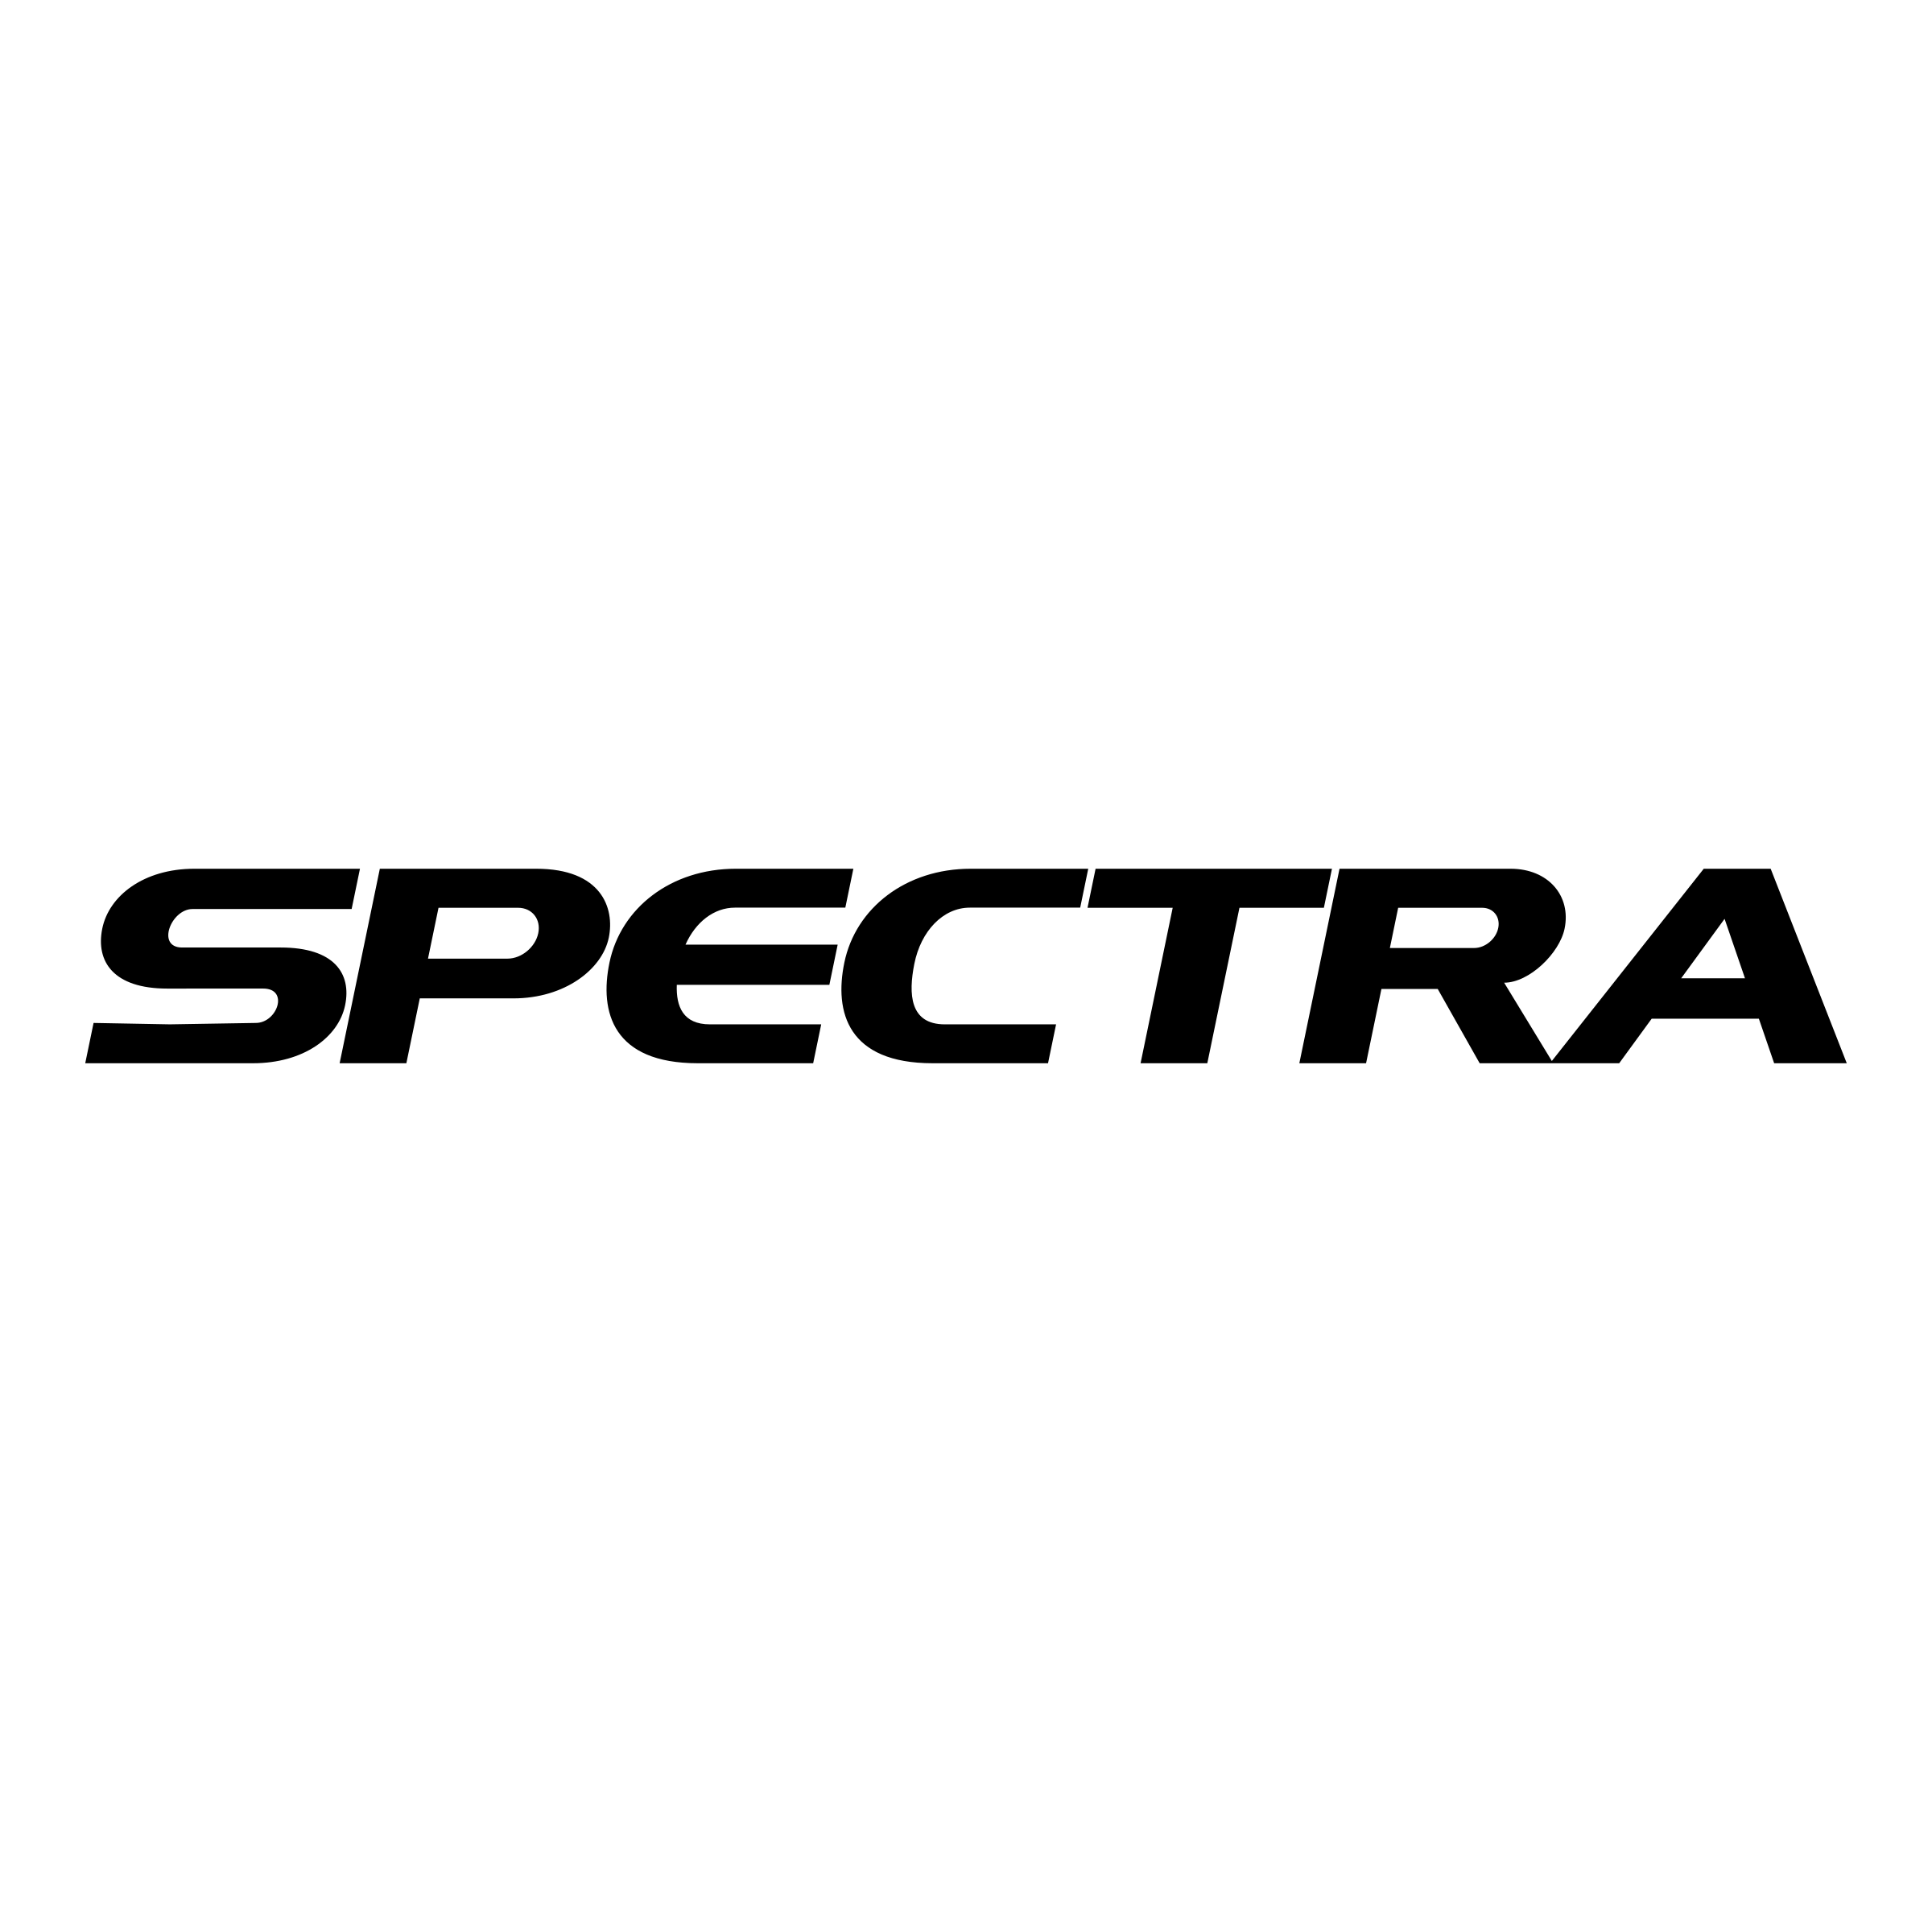 Spectra Logo - Spectra Logo PNG Transparent & SVG Vector